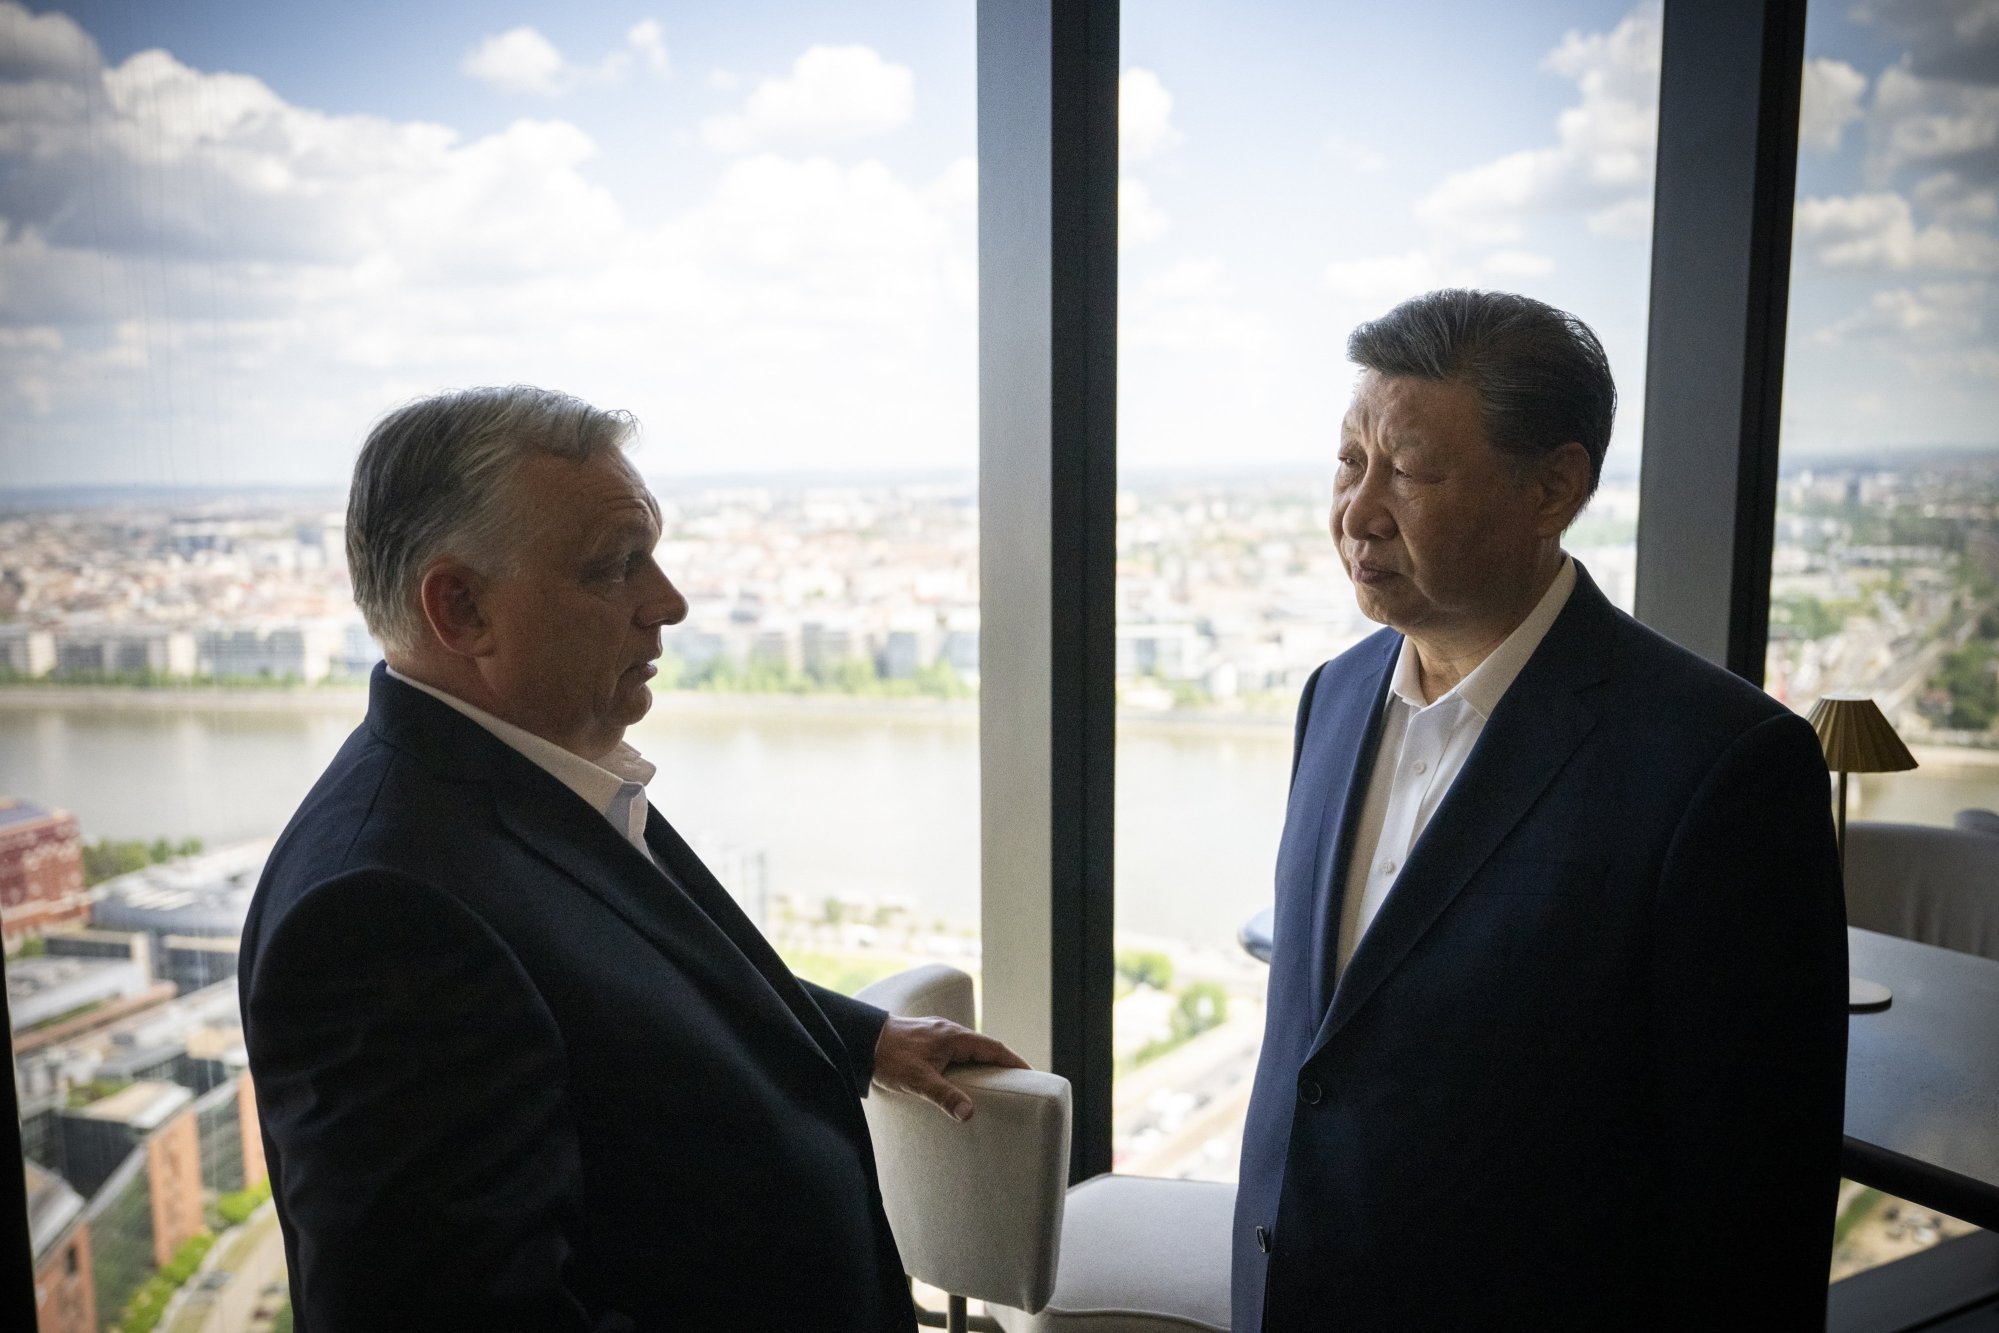 La gira de Xi Jinping ha terminado, dejando atrás una división en Europa sobre cómo tratar con China